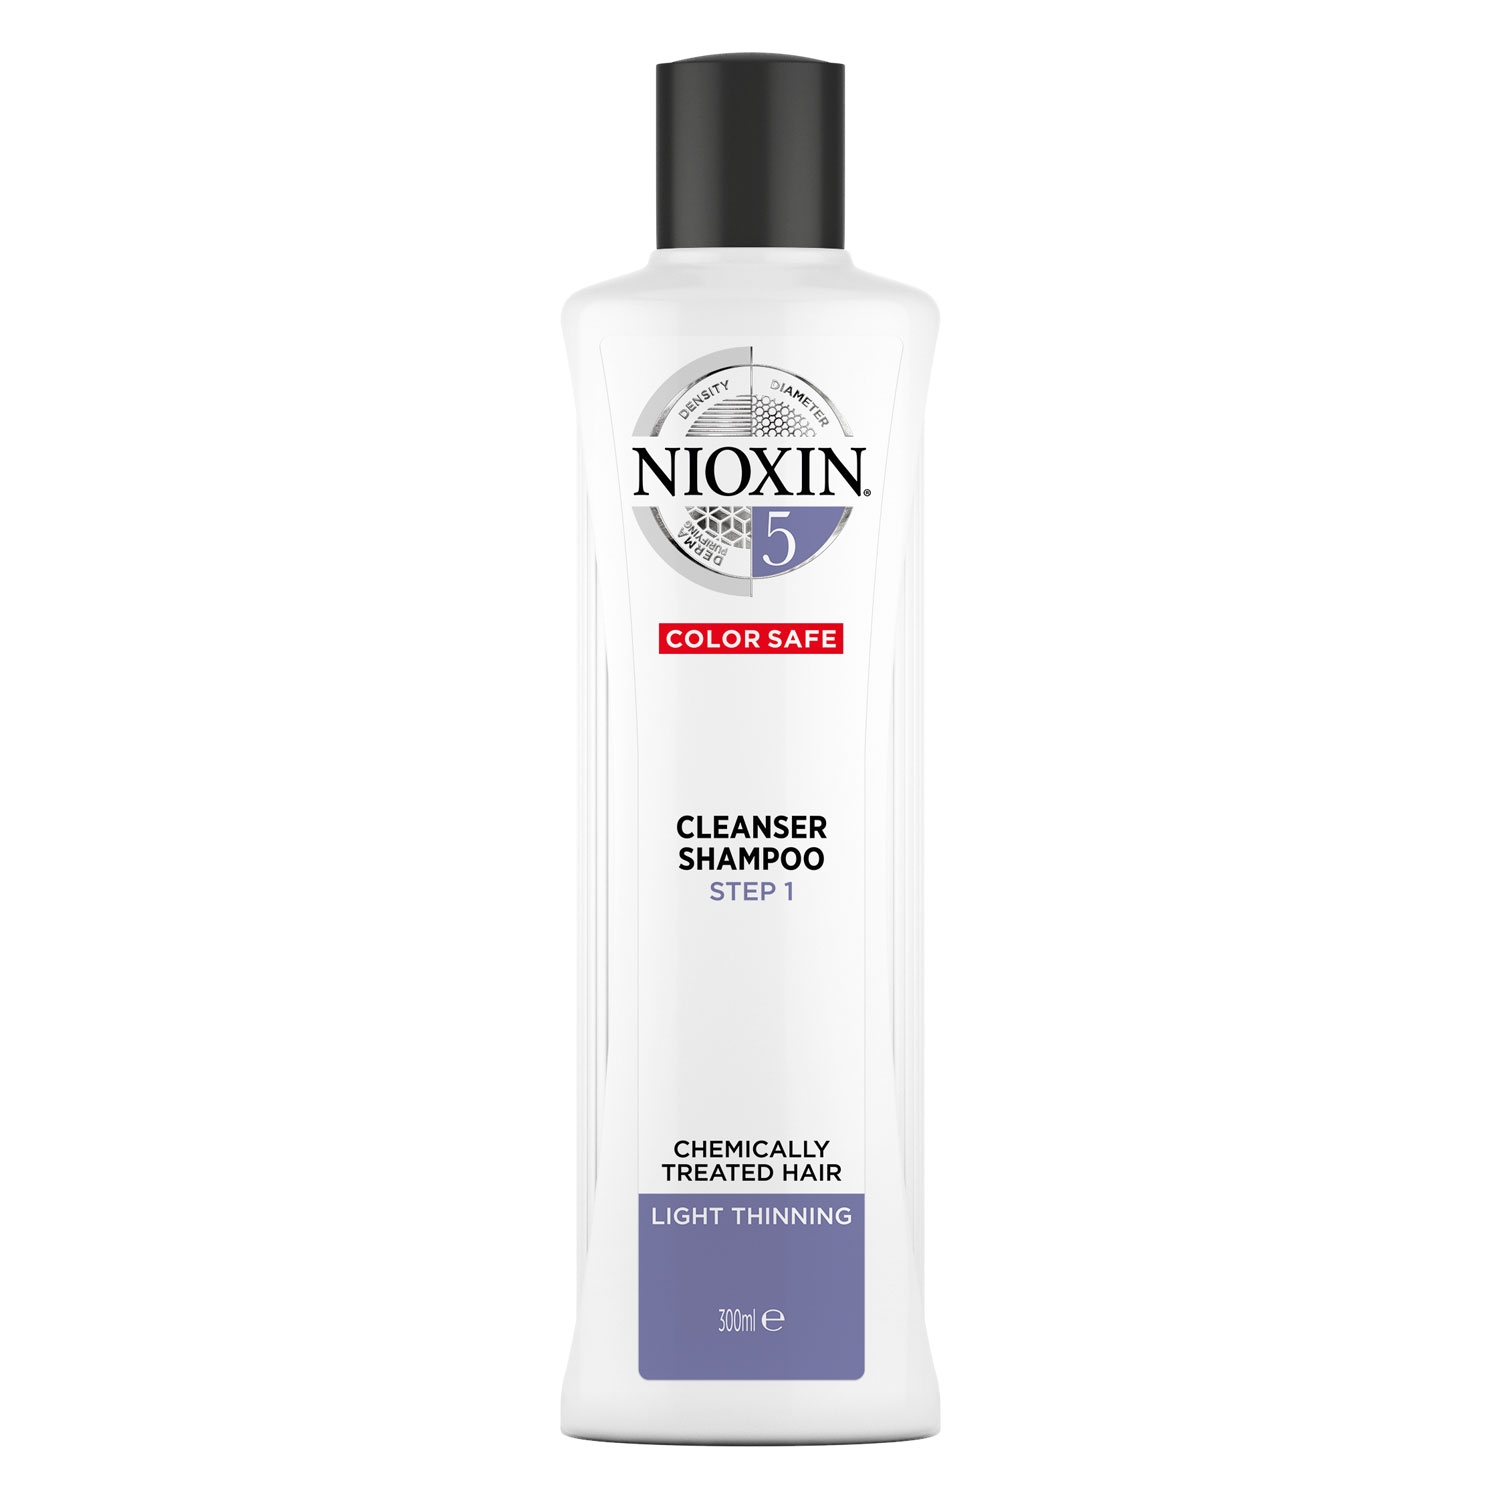 Produktbild von Nioxin - Cleanser Shampoo 5